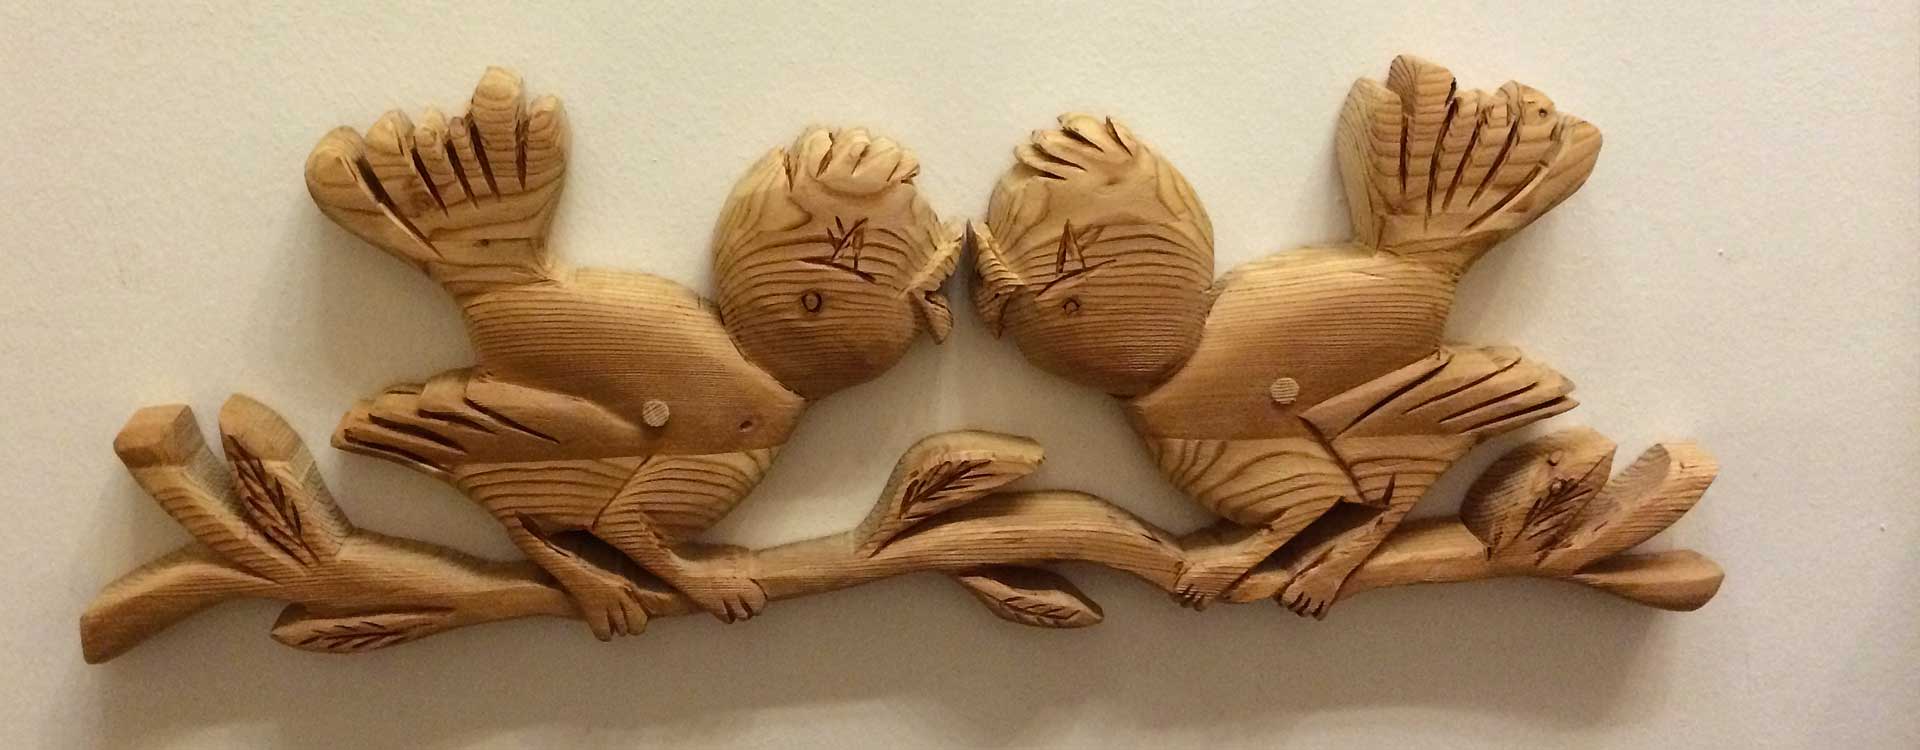 uccellini in legno